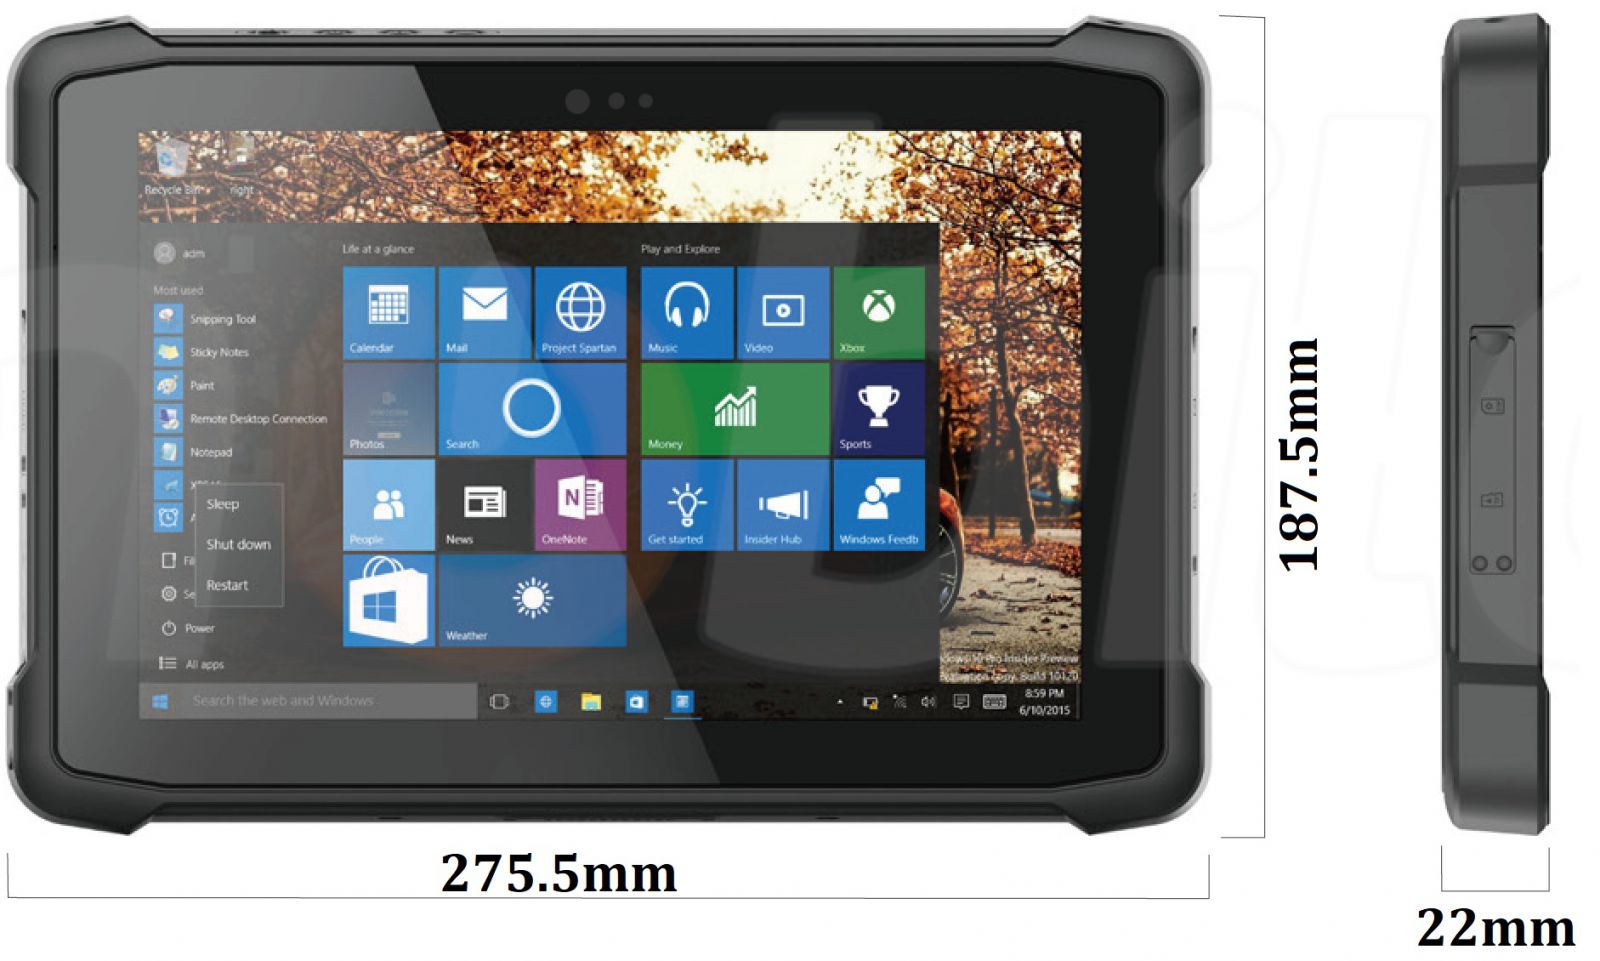 Emdoor I11H v.4 - Odporny na upadki dziesiciocalowy tablet z Windows 10 Pro, Bluetooth 4.2, 4GB RAM pamici, dyskiem 64GB, czytnikiem kodw 2D N3680 Honeywell, NFC  i 4G 